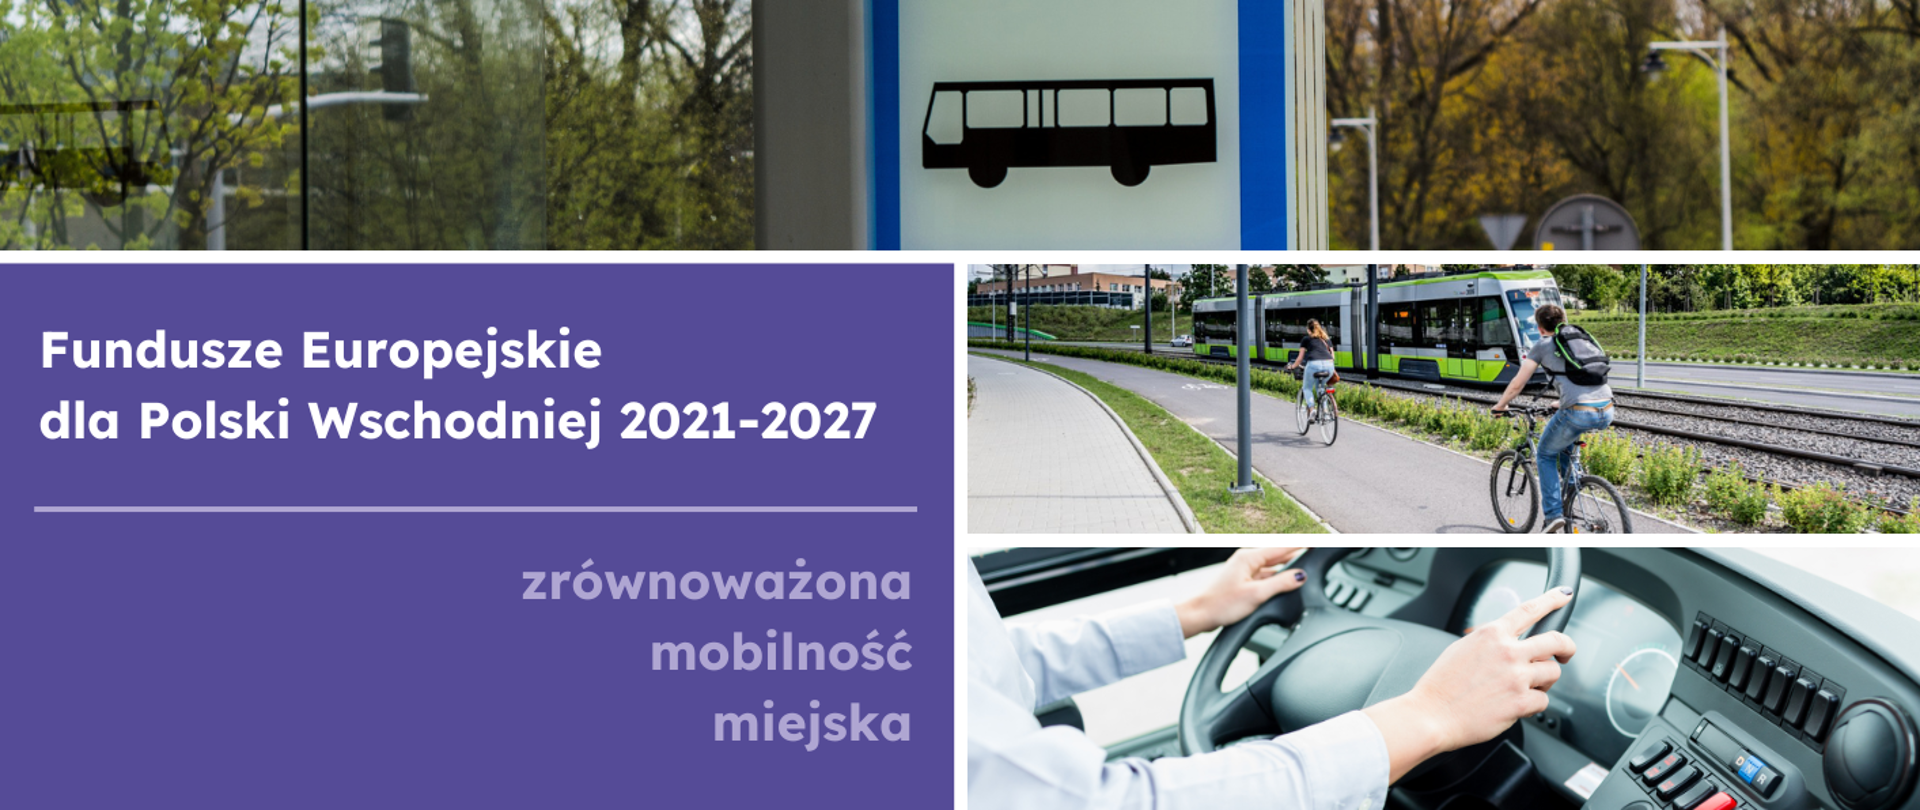 Kolaż trzech zdjęć transportu miejskiego oraz napis "Fundusze Europejskie dla Polski Wschodniej 2021-2027 zrównoważona mobilność miejska"